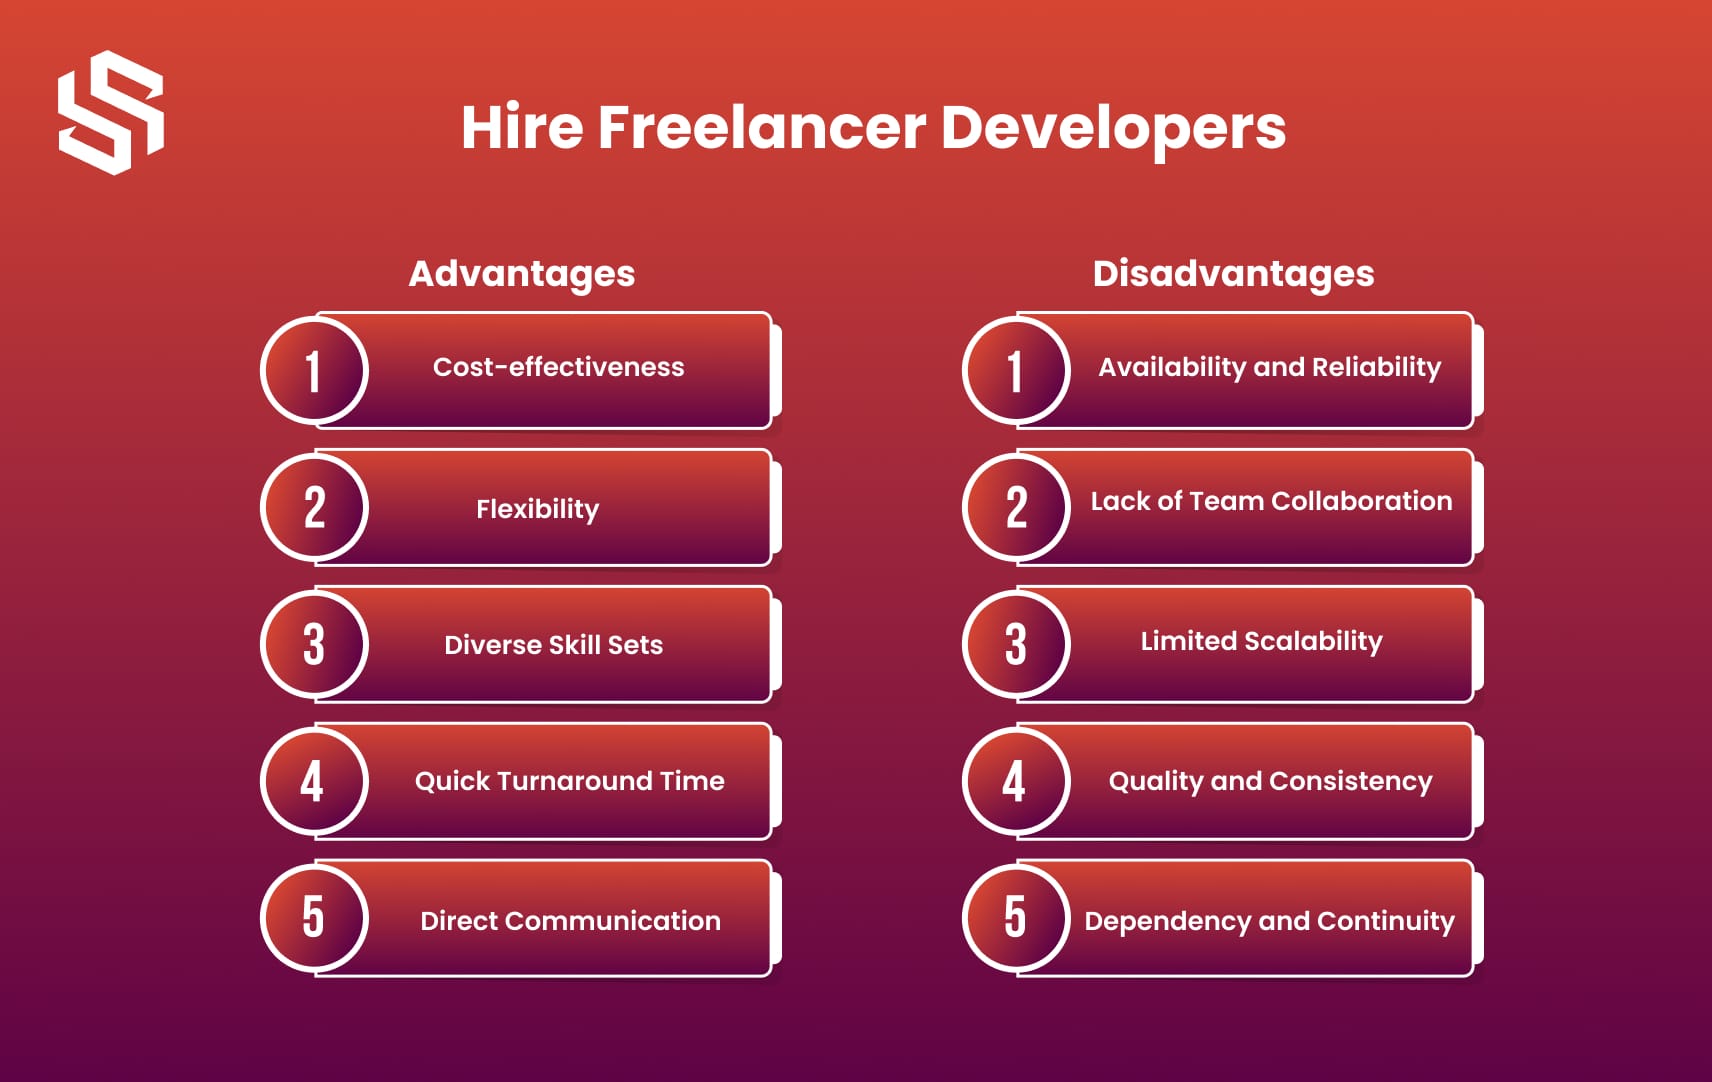 Hire Freelancer Developers